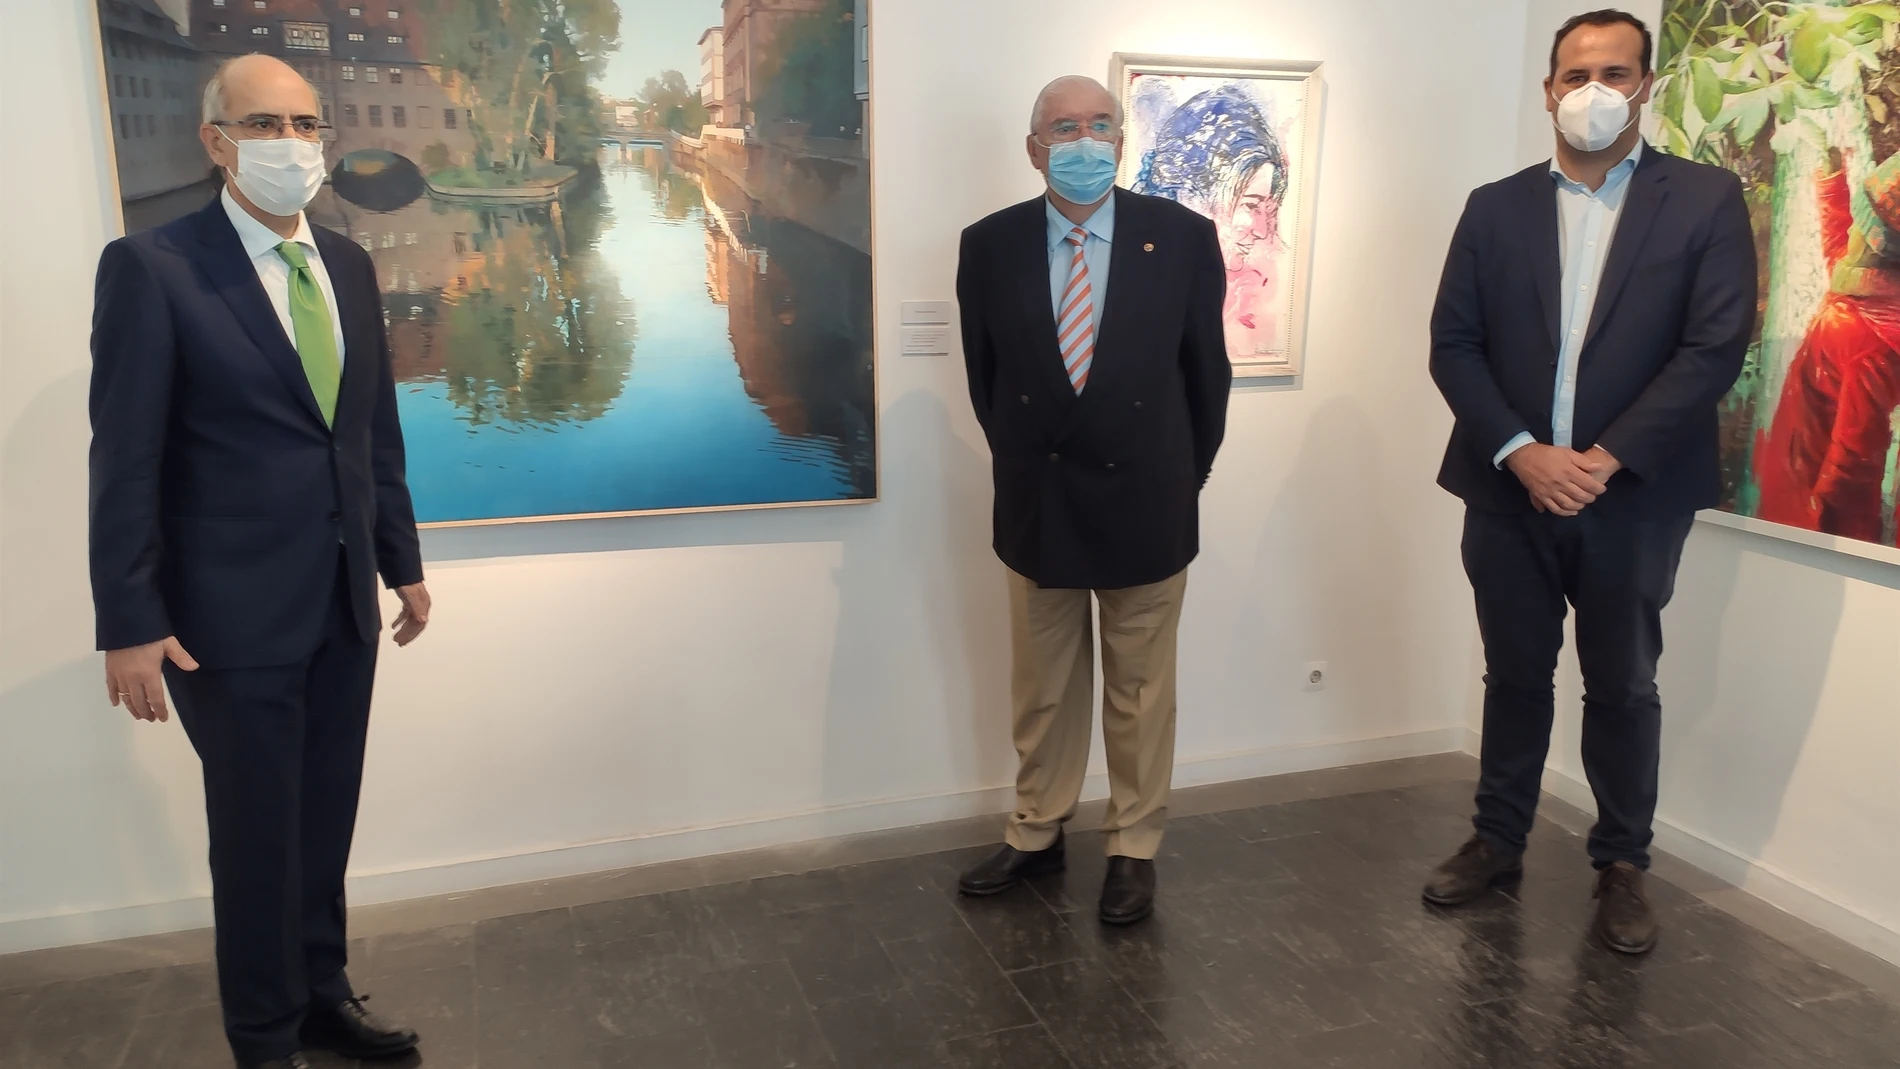 Inaiguración de una exposición en La Salina con la presencia del presidente de la Diputación, Javier Iglesias